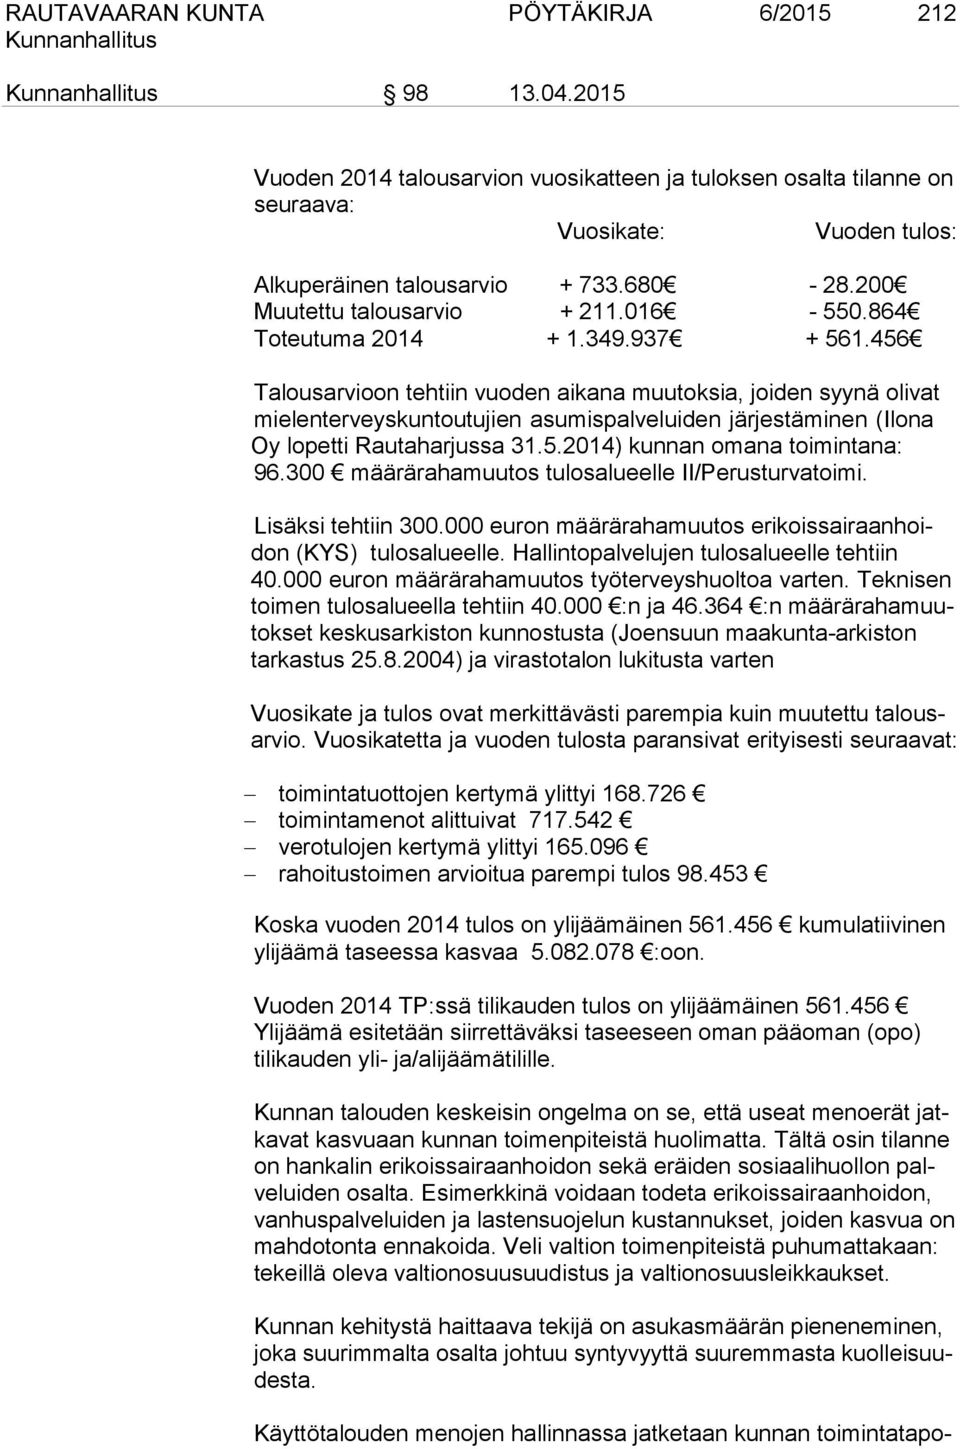 456 Talousarvioon tehtiin vuoden aikana muutoksia, joiden syynä olivat mielenterveyskuntoutujien asumispalveluiden järjestäminen (Ilona Oy lopetti Rautaharjussa 31.5.2014) kunnan omana toimintana: 96.